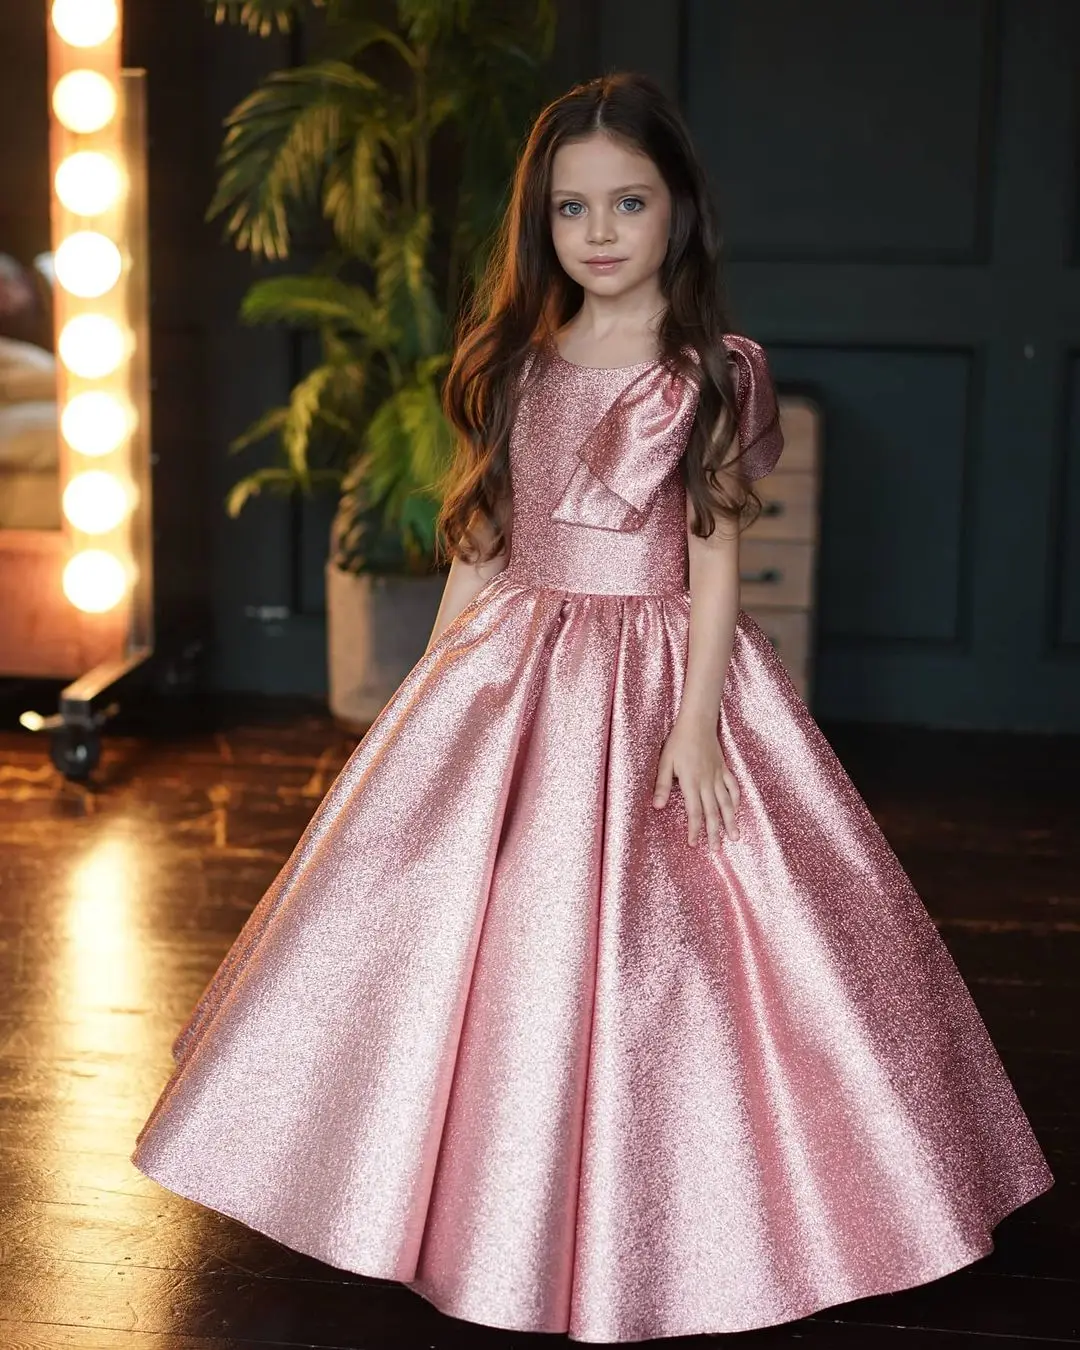 

Pink Flower Gir Dress Glitter Floor Length Gowns Evening Party Fluffy Skirt Ball Gown Communion Kid Toddler TUTU